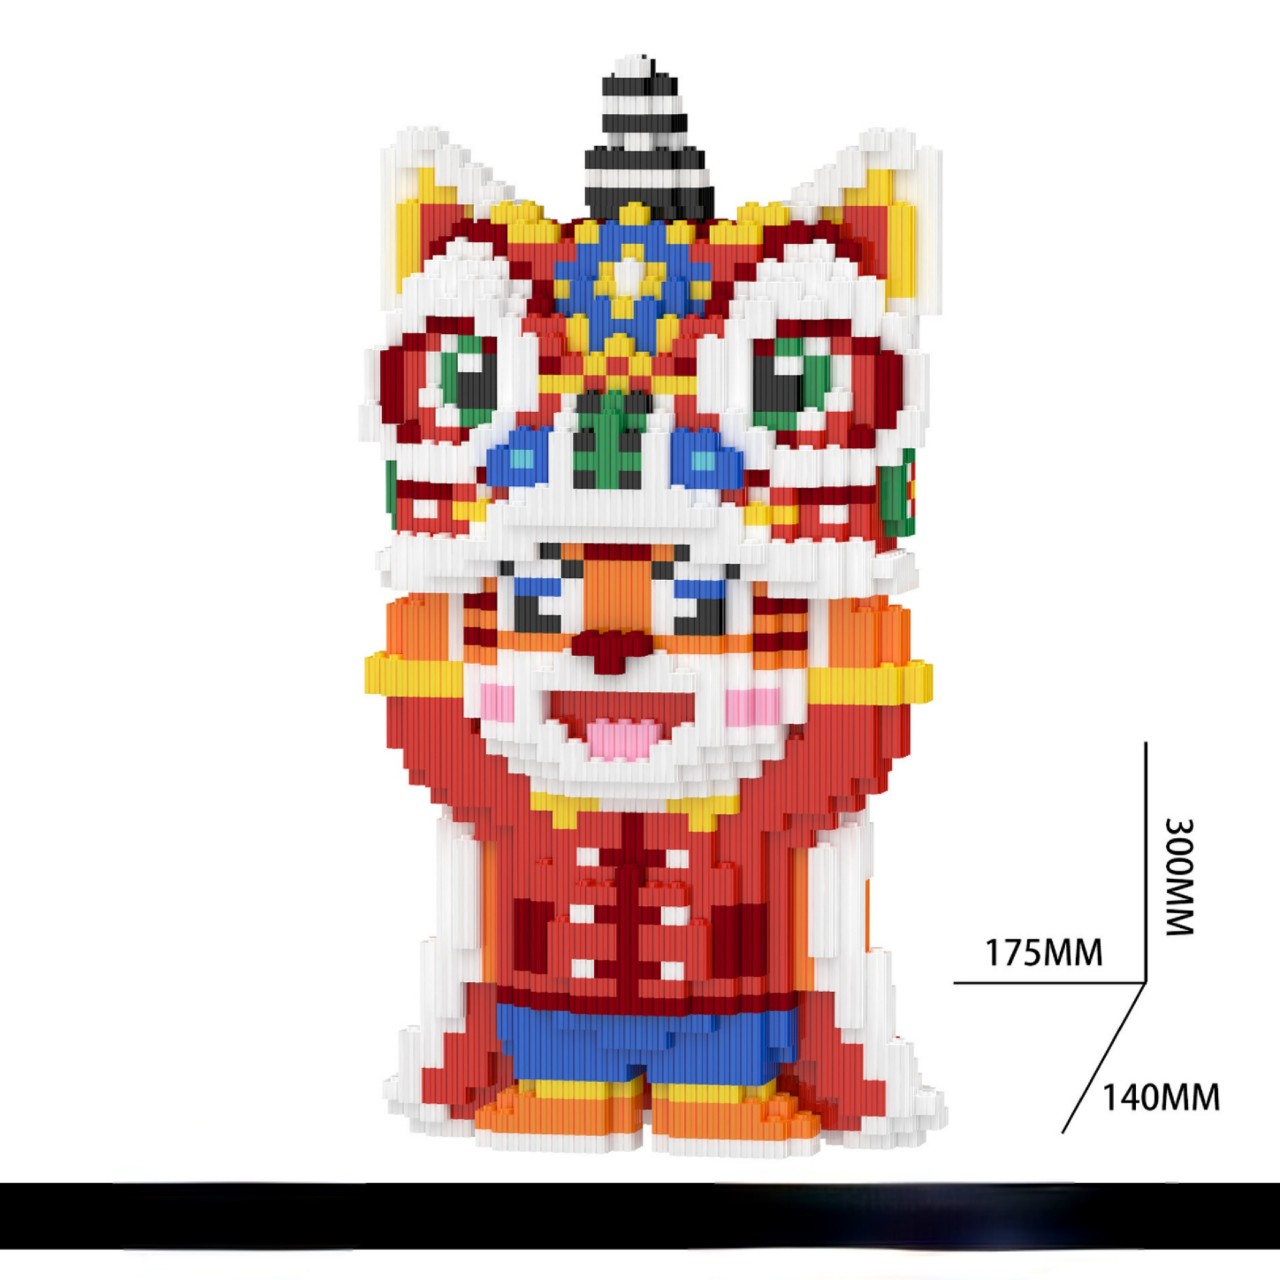 Lego HỔ CON múa Kỳ Lân là một bộ đồ chơi tuyệt vời cho các bé yêu thích xếp hình Lego. Bộ đồ chơi này giúp trẻ phát triển tư duy sáng tạo và kỹ năng xếp hình. Xem bức ảnh, bạn sẽ có cơ hội chiêm ngưỡng những hình ảnh Lego sinh động và đầy màu sắc.